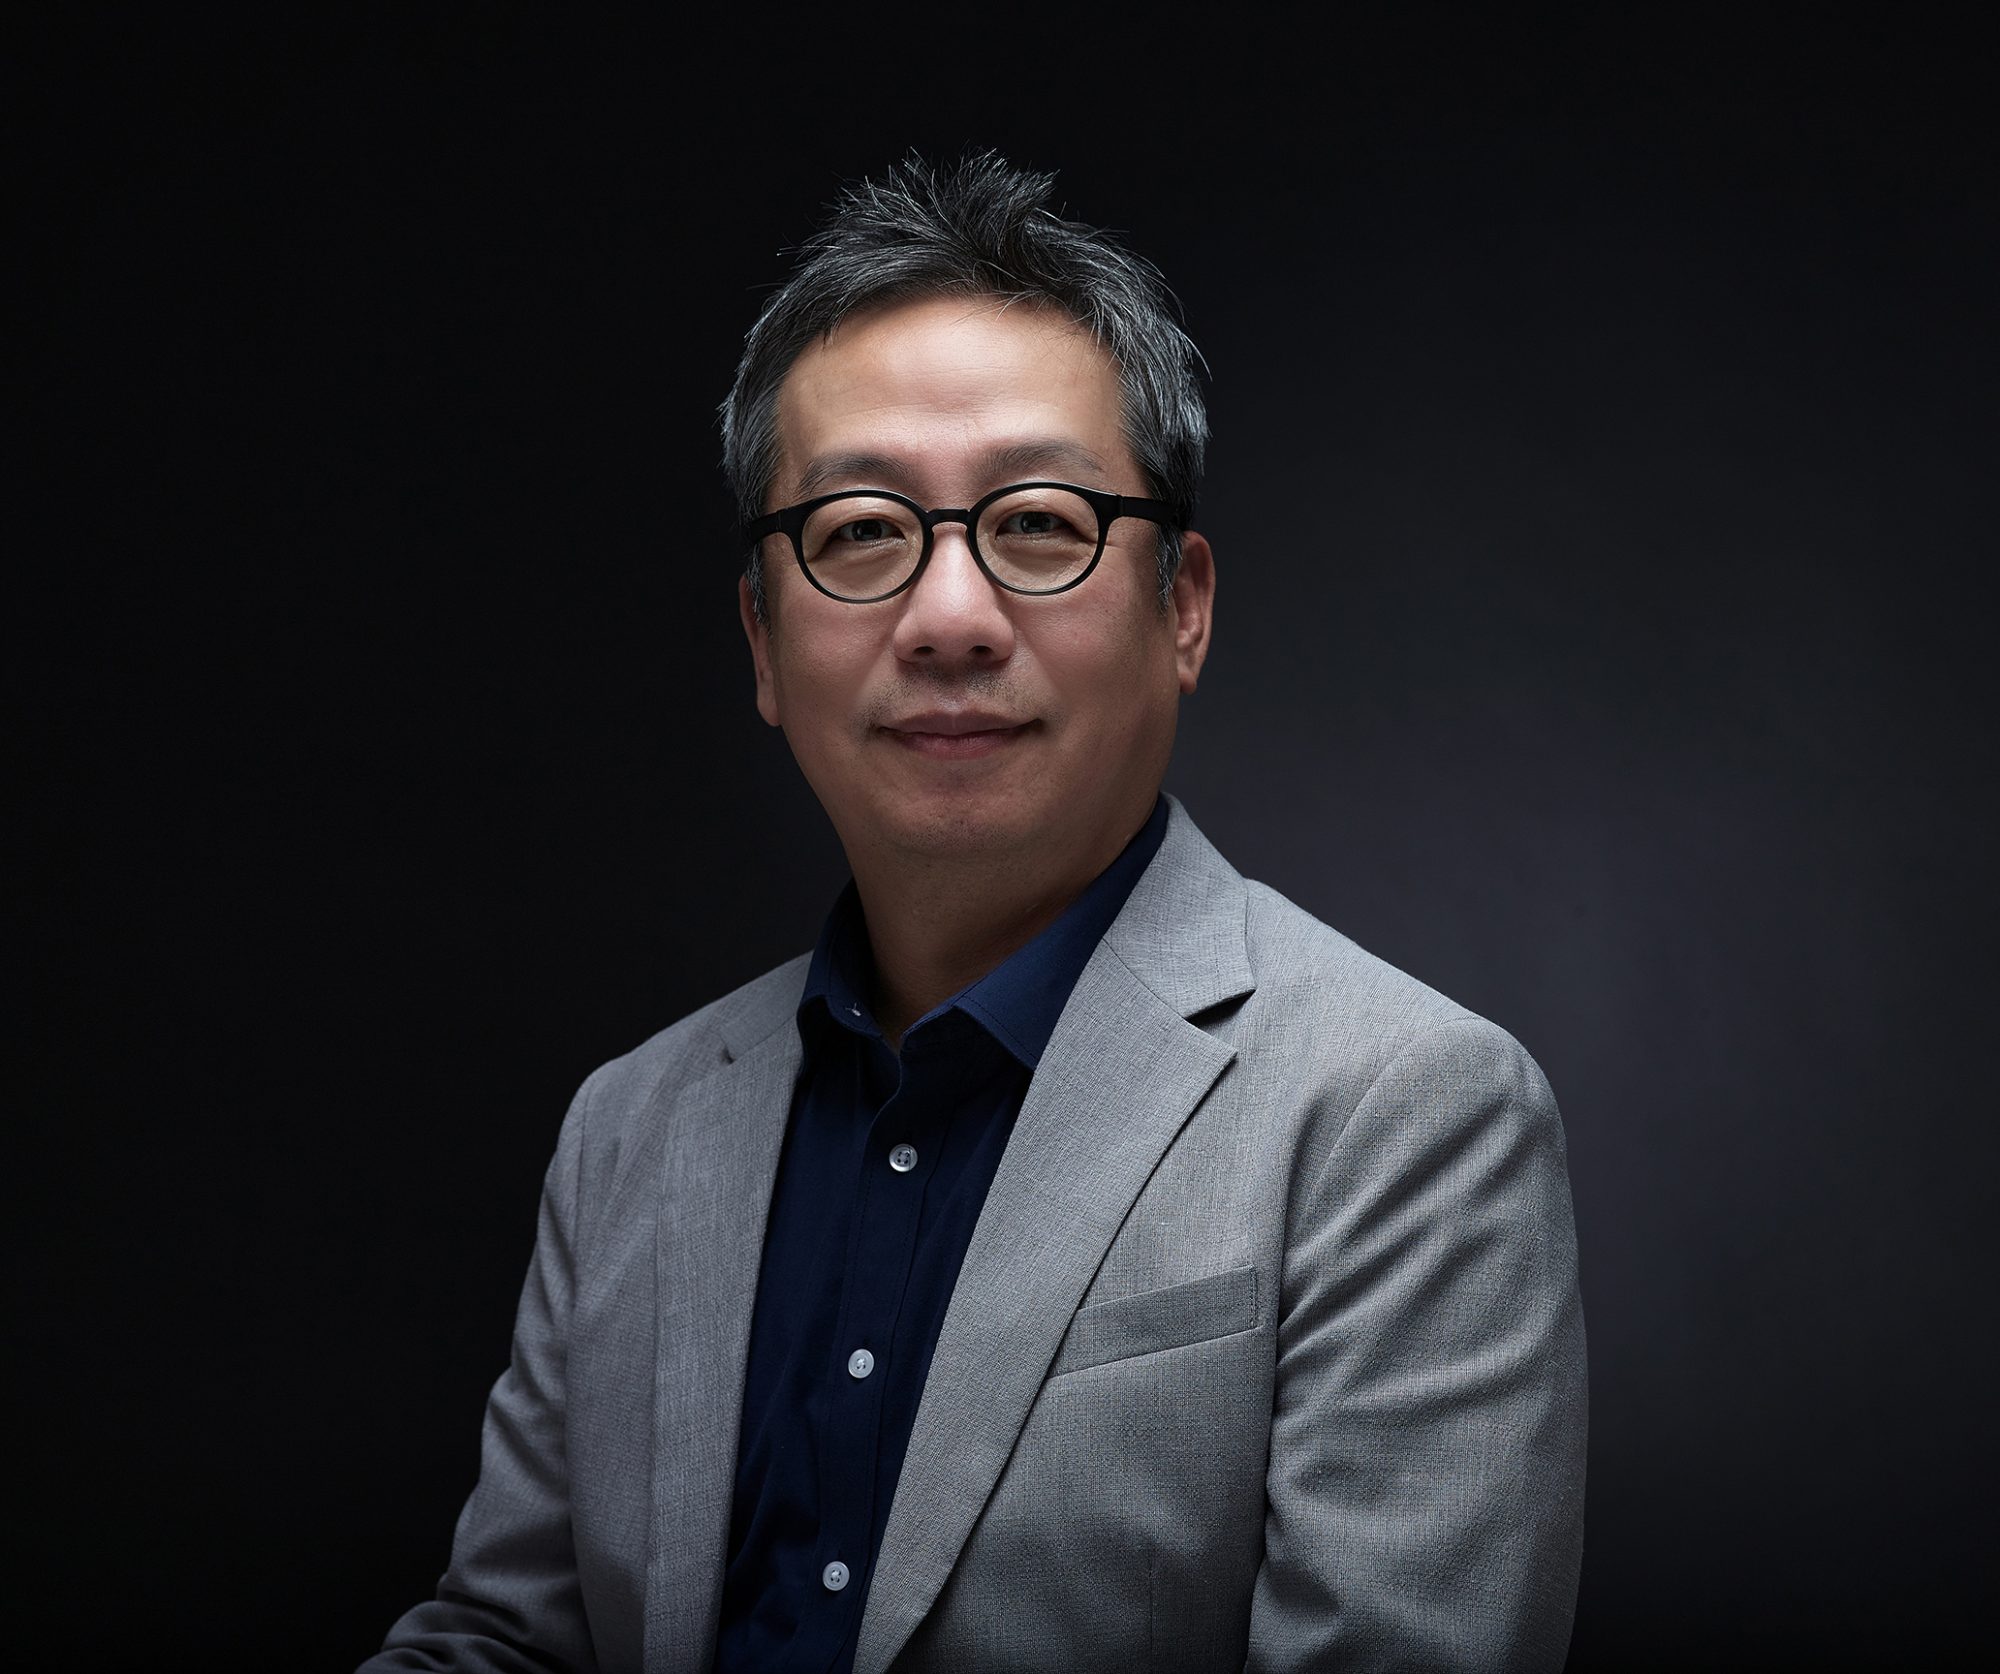 جانغ جي هيون رئيسًا للجمعية الكورية لتكنولوجيا التصوير